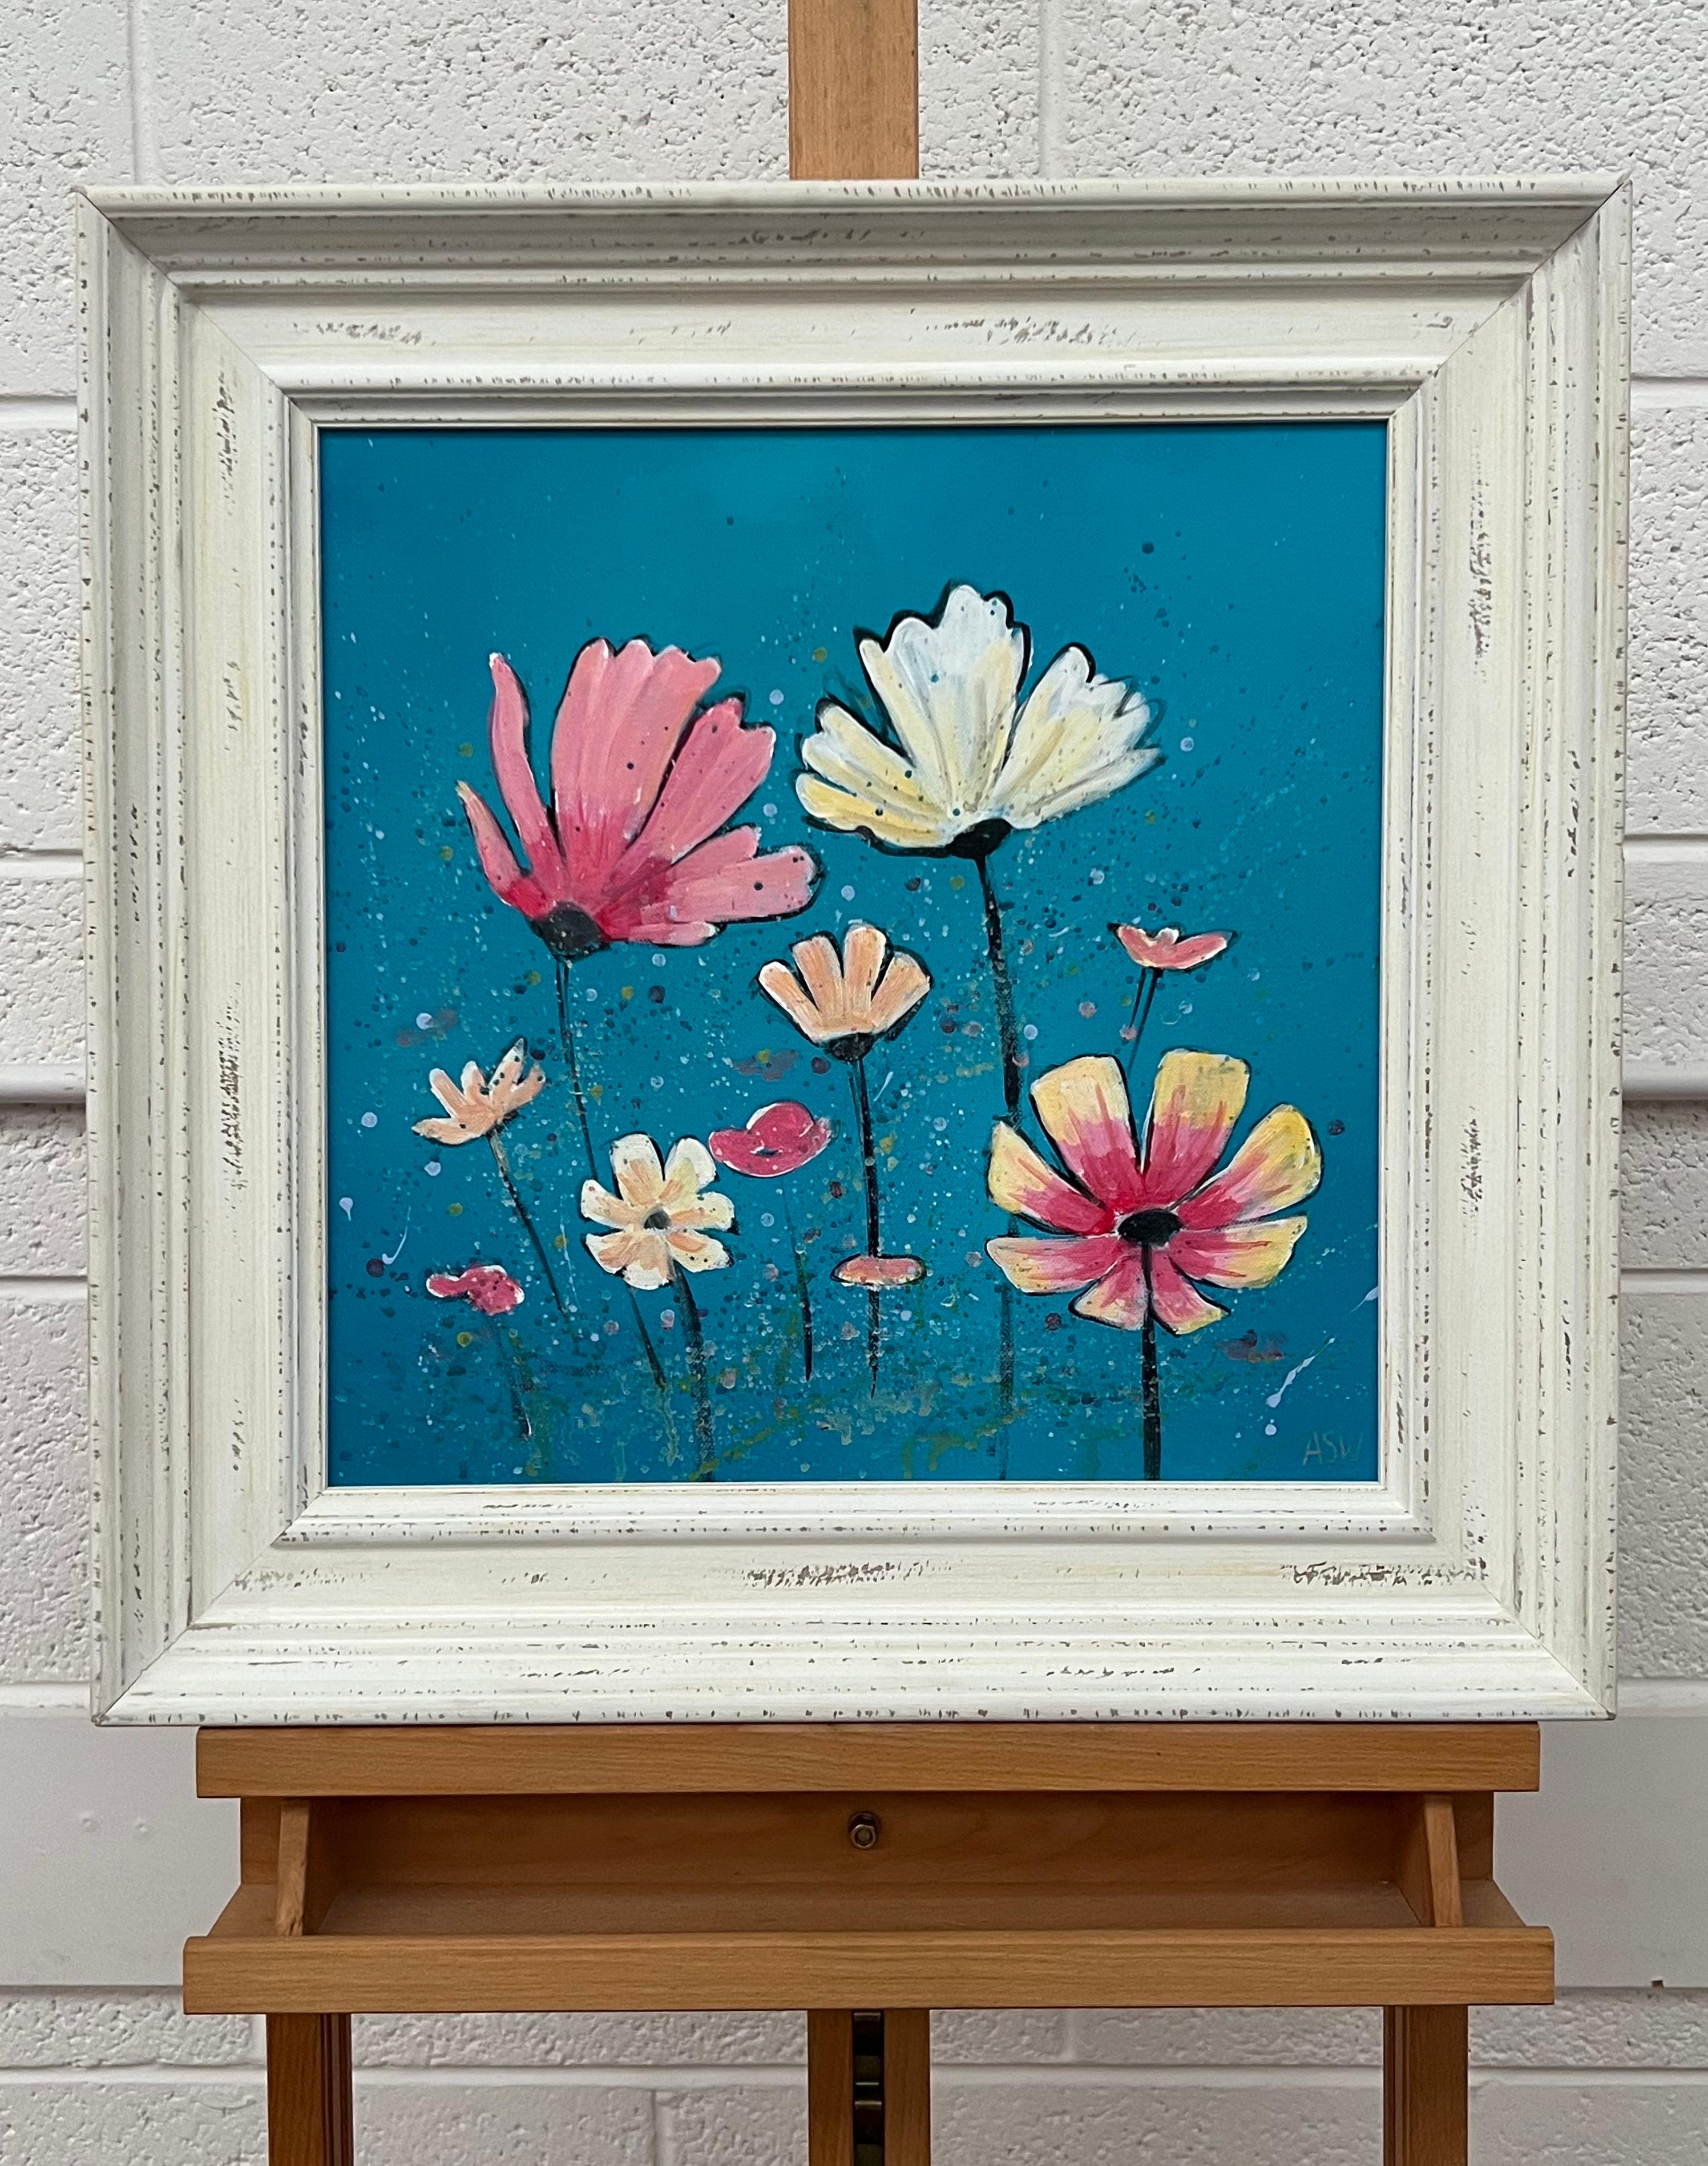 Design/One de fleurs sauvages roses et blanches sur turquoise par un artiste contemporain - Impressionnisme abstrait Painting par Angela Wakefield